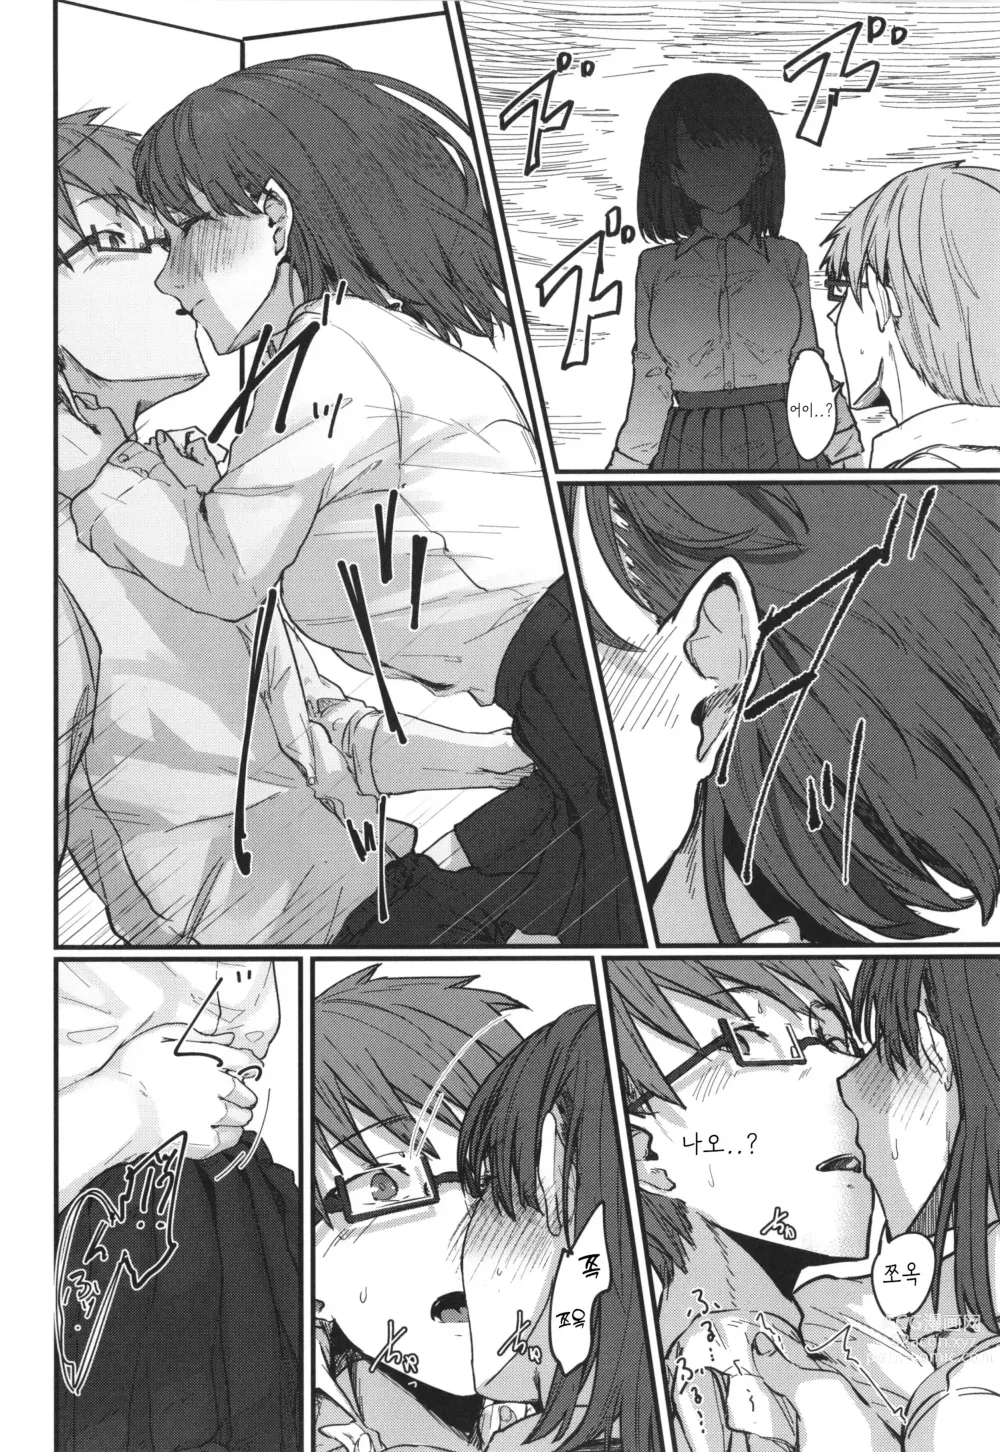 Page 6 of manga Hatsukoi no Hito